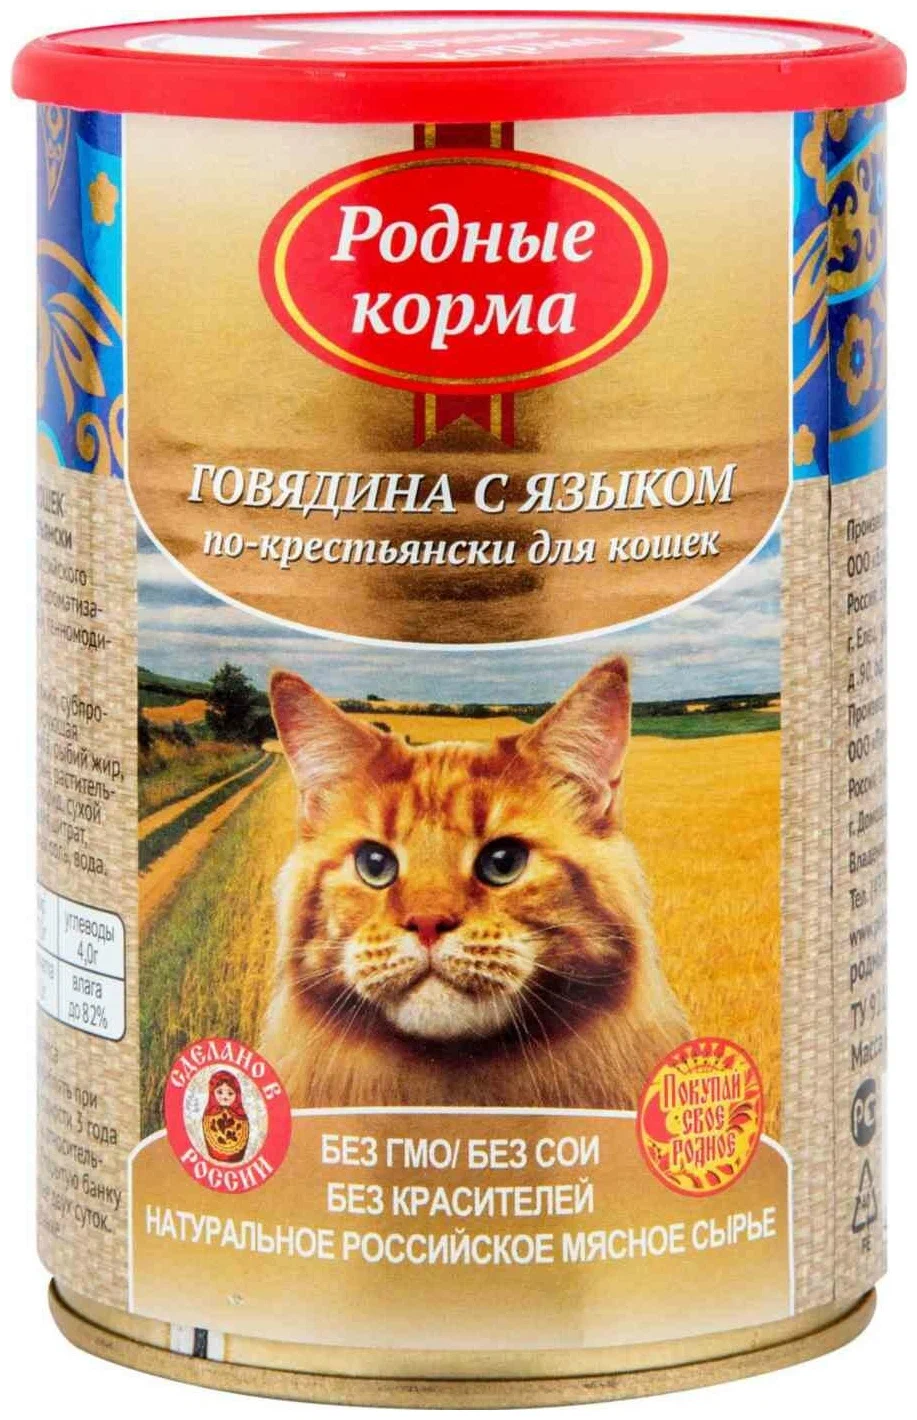 Родные корма, Консервы для кошек (говядина/язык по-крестьянски), 410 г